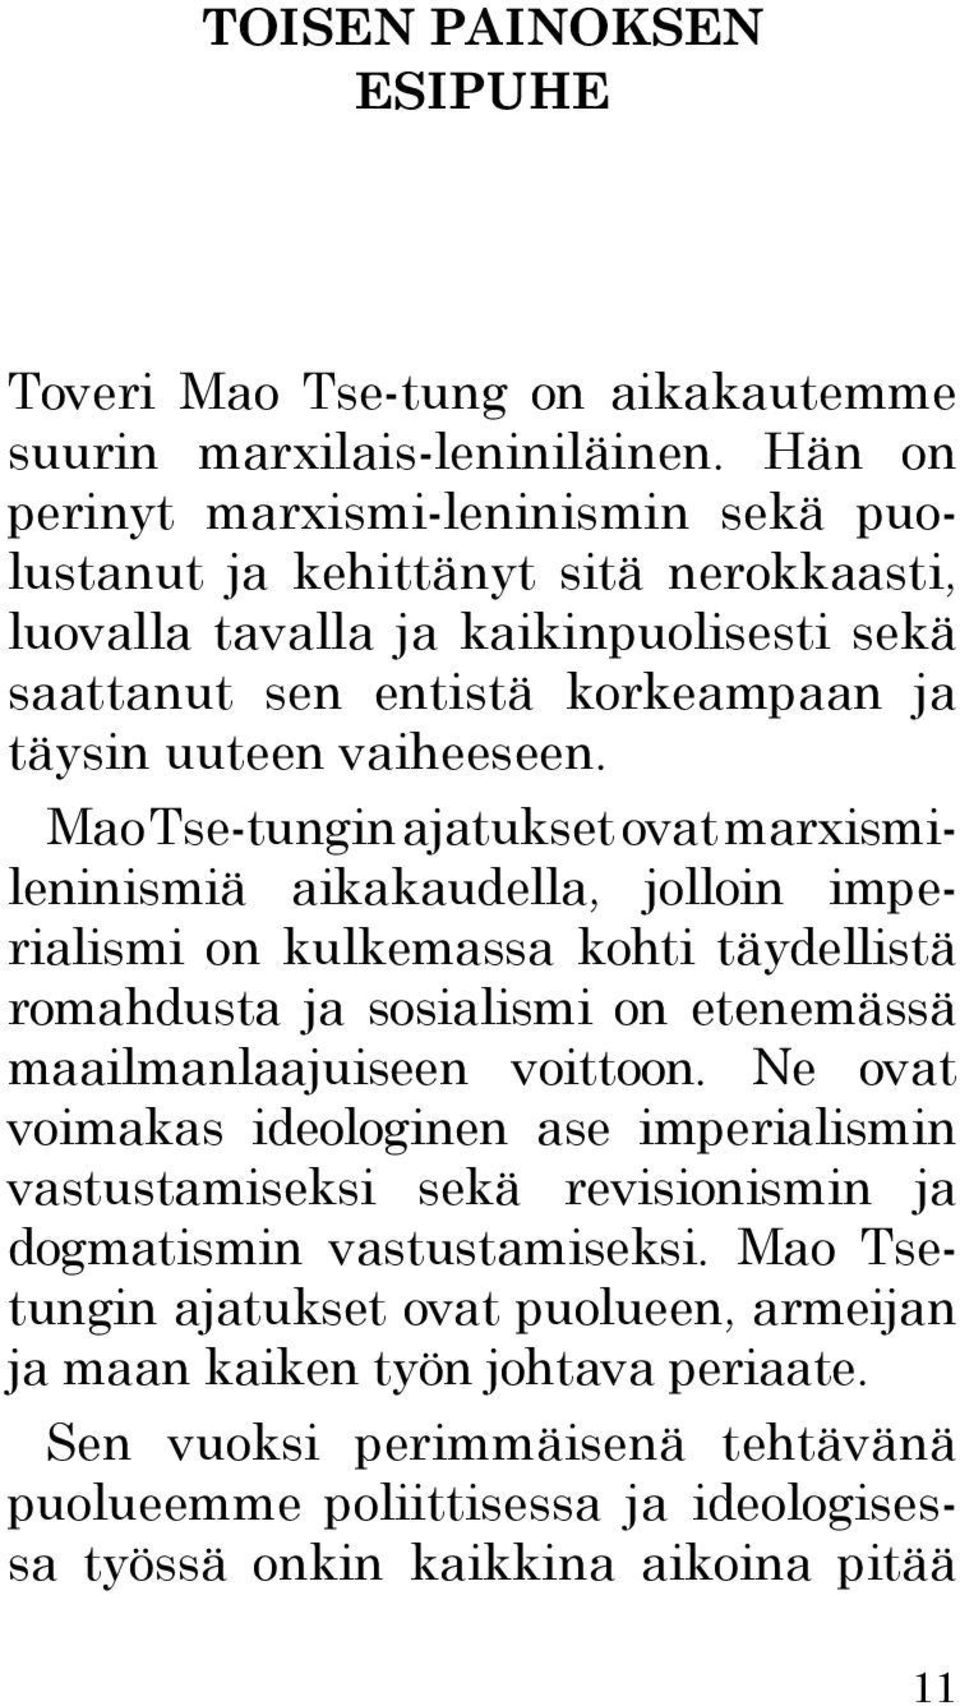 Mao Tse-tungin ajatukset ovat marxismileninismiä aikakaudella, jolloin imperialismi on kulkemassa kohti täydellistä romahdusta ja sosialismi on etenemässä maailmanlaajuiseen voittoon.